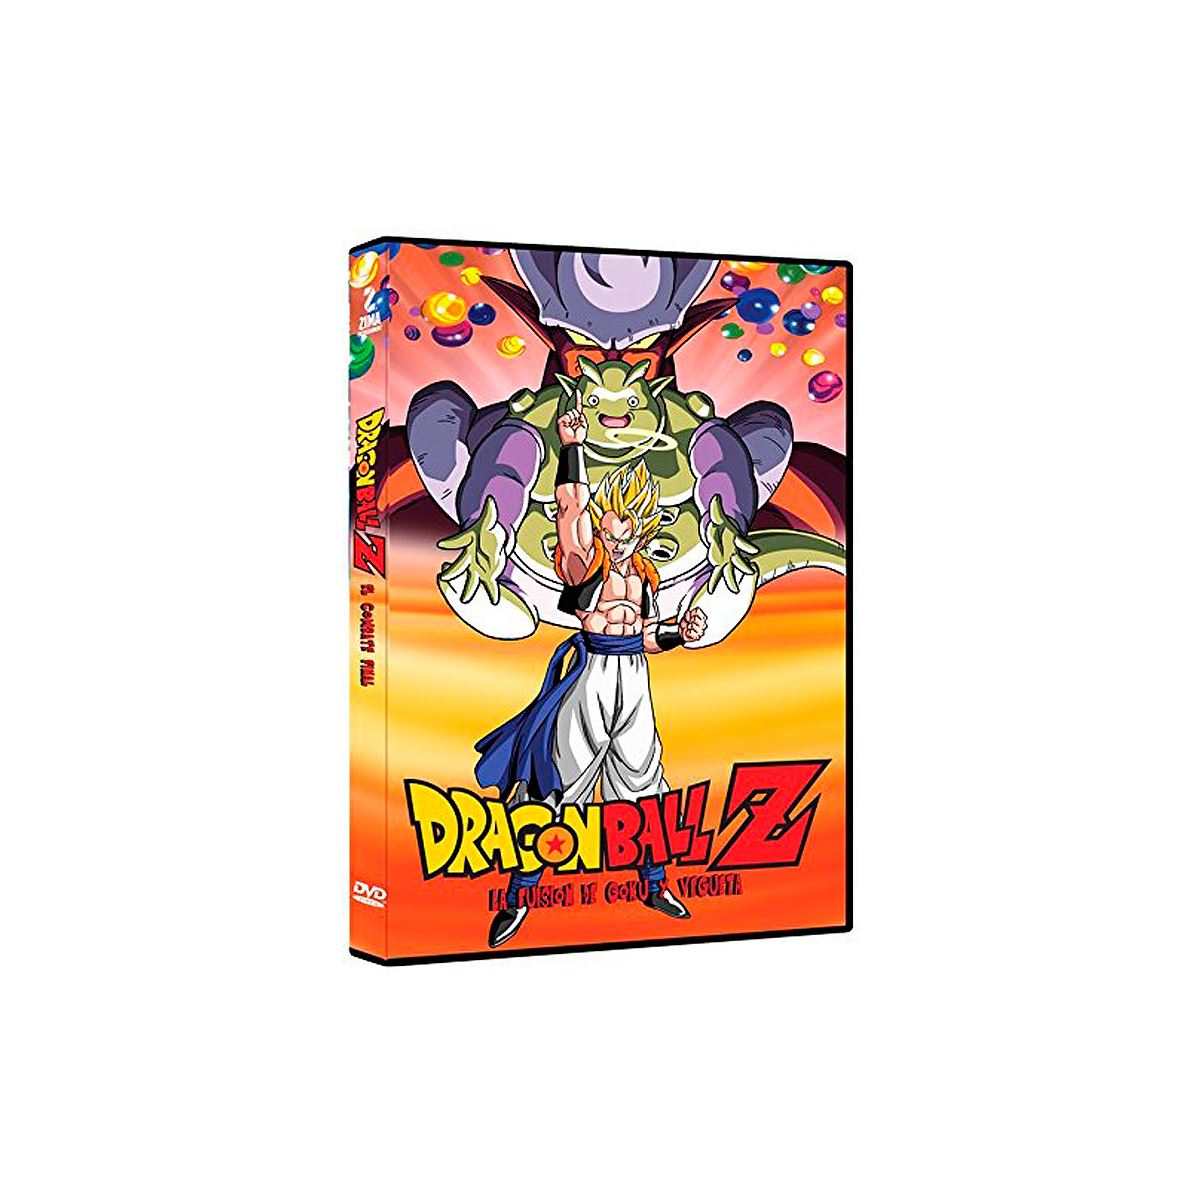 DVD Dragon Ball Z - La Fusión De Goku Y Vegueta